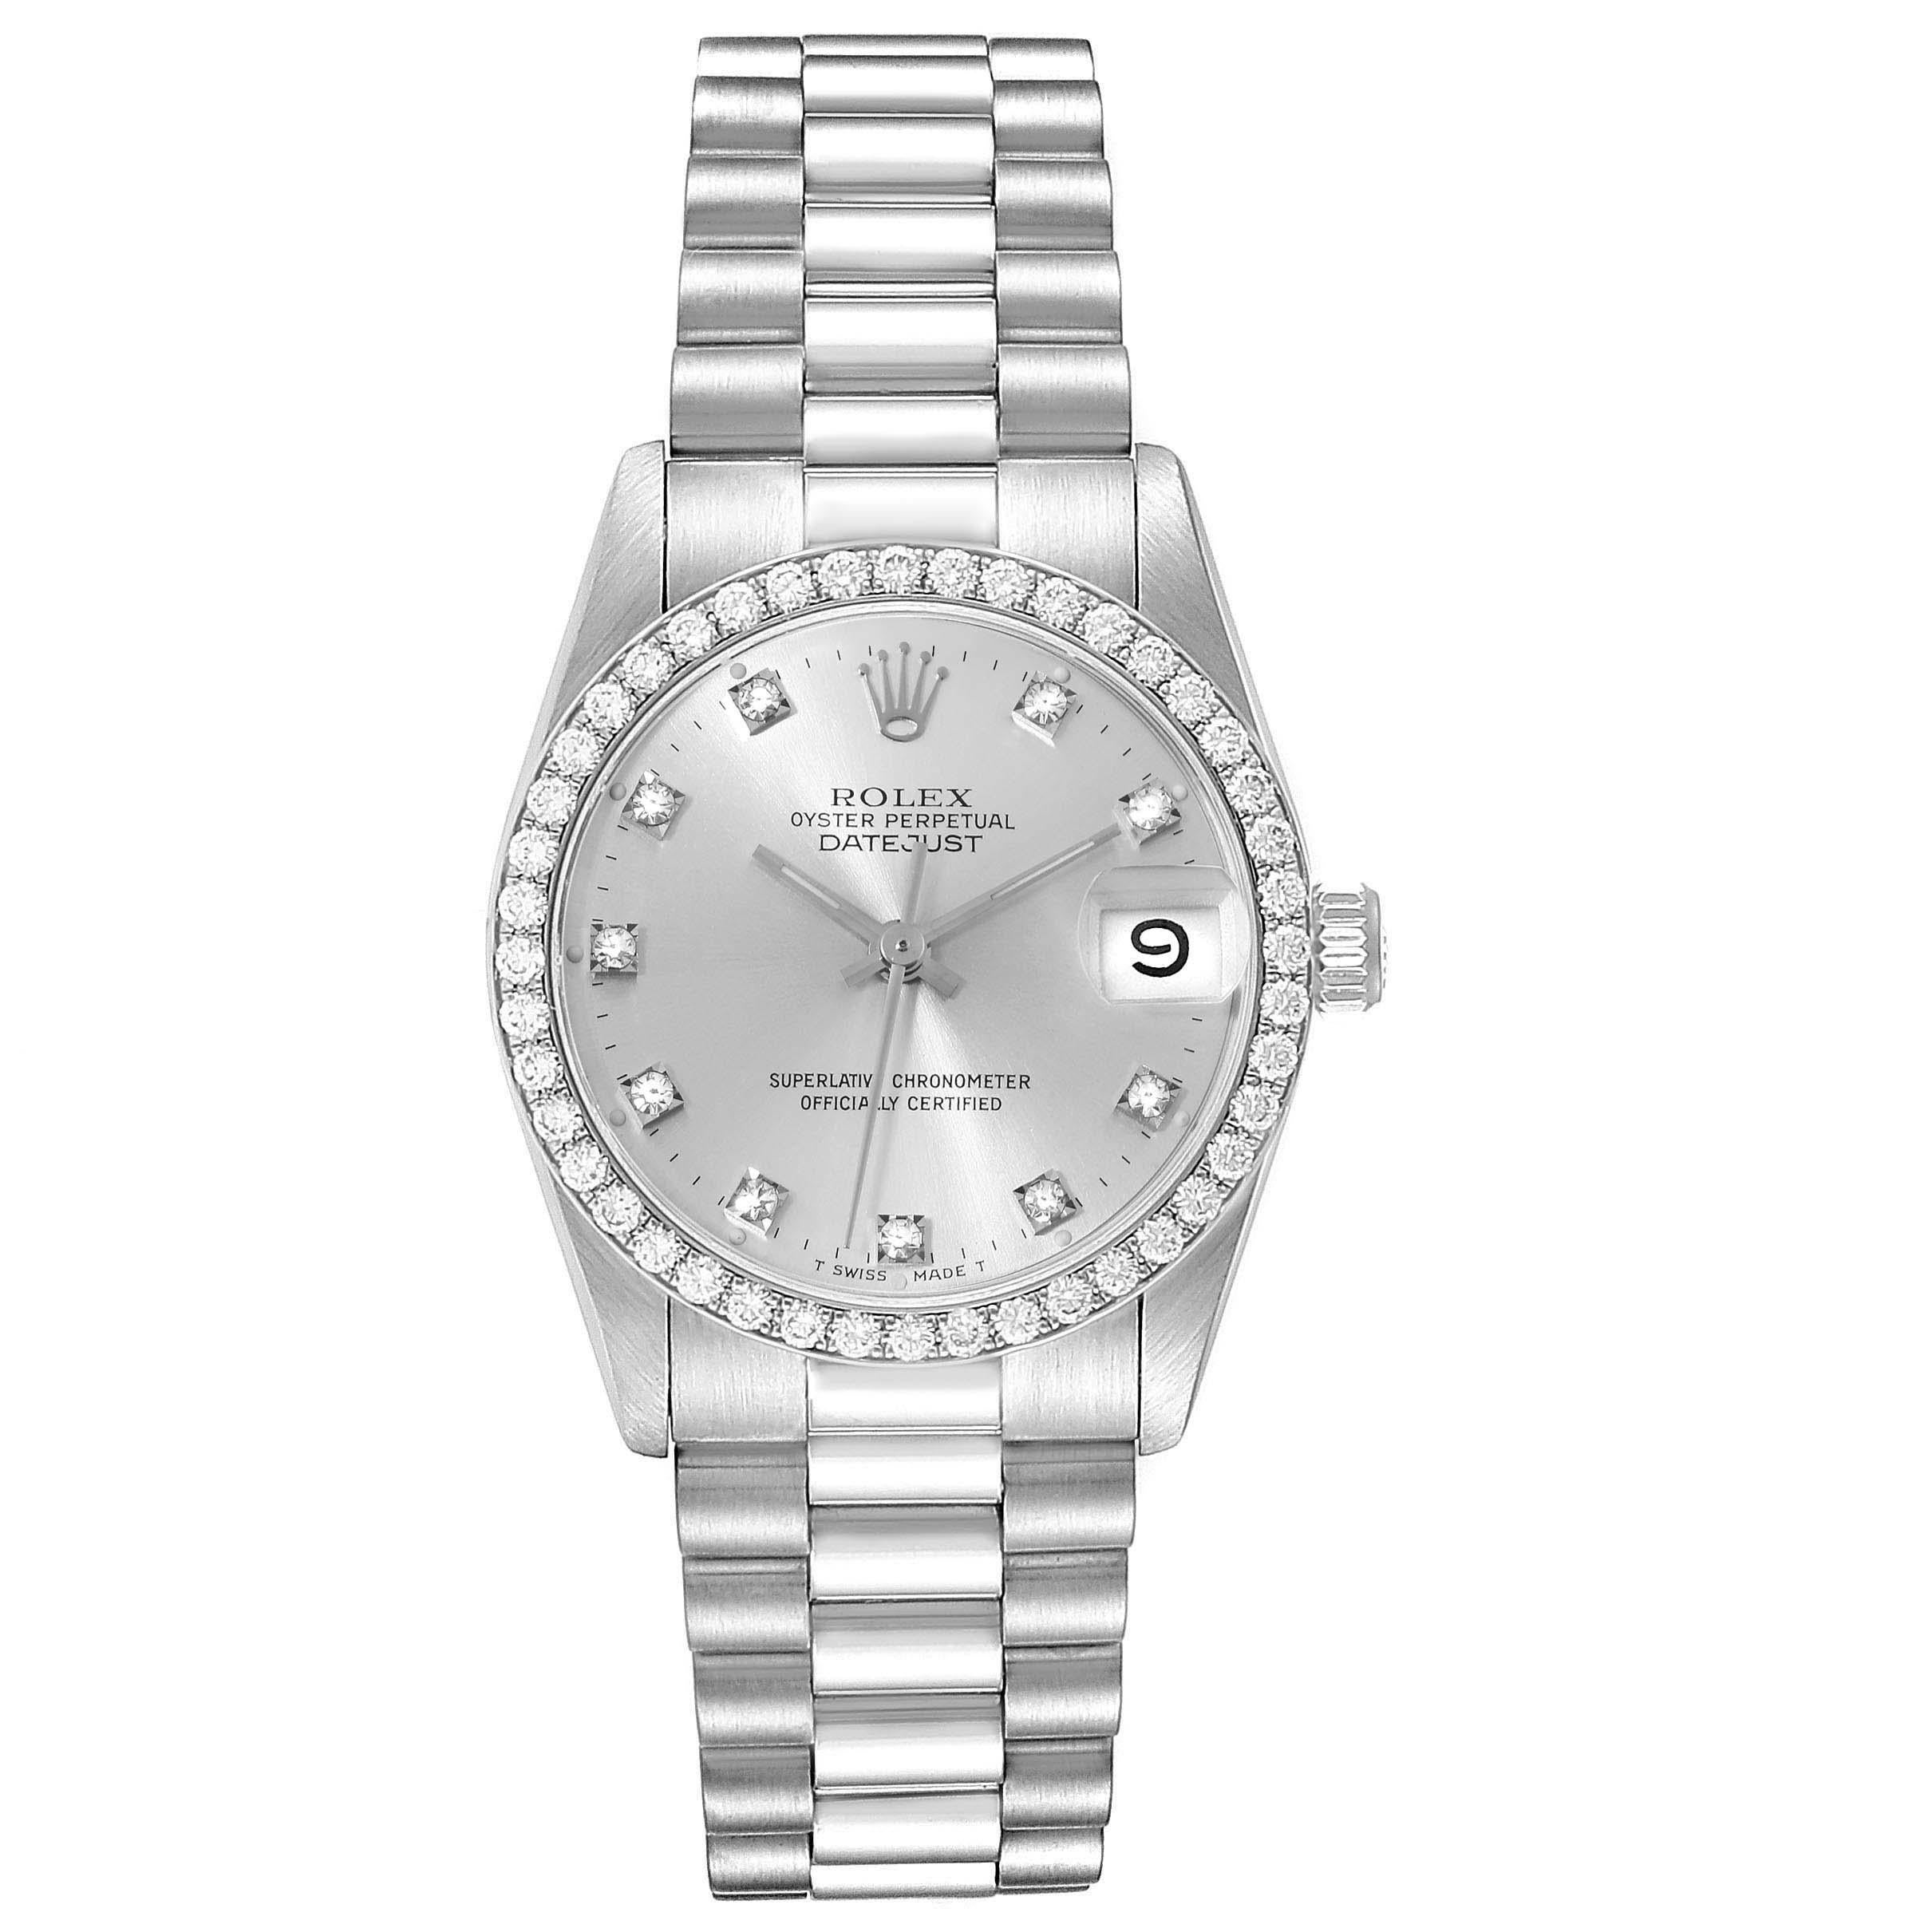 Rolex President Datejust Midsize White Gold Diamond Ladies Watch 68289. Mouvement automatique à remontage automatique, officiellement certifié chronomètre. Boîtier oyster en or blanc 18k de 31,0 mm de diamètre. Logo Rolex sur une couronne. Lunette